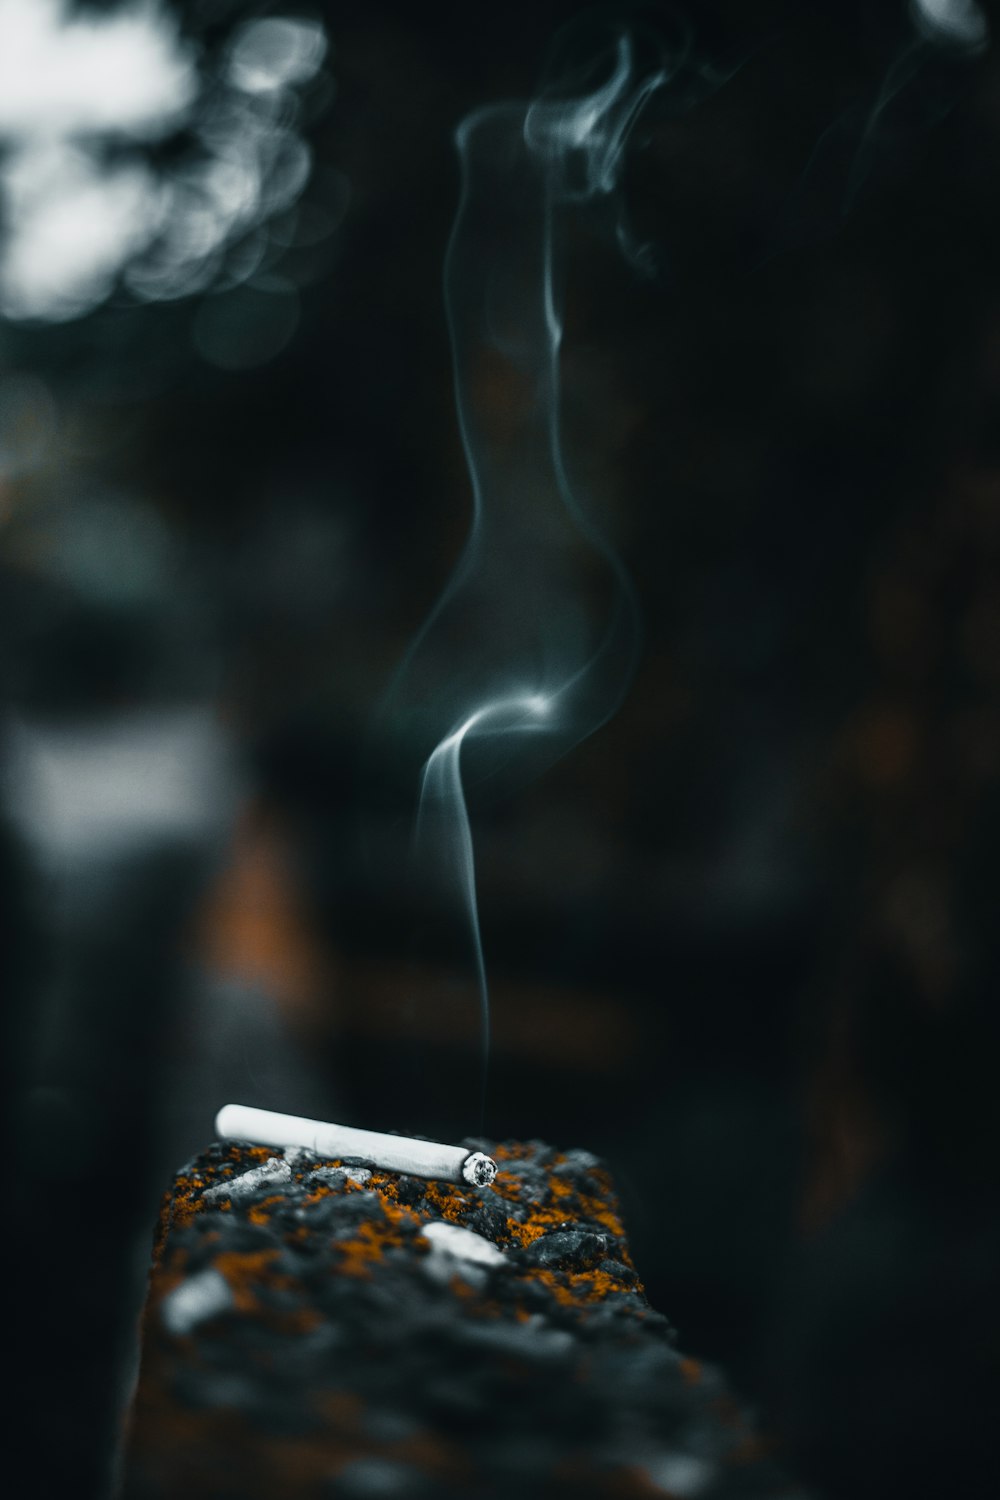 cigarette stick on wall photo – Free Smoke Image on Unsplash